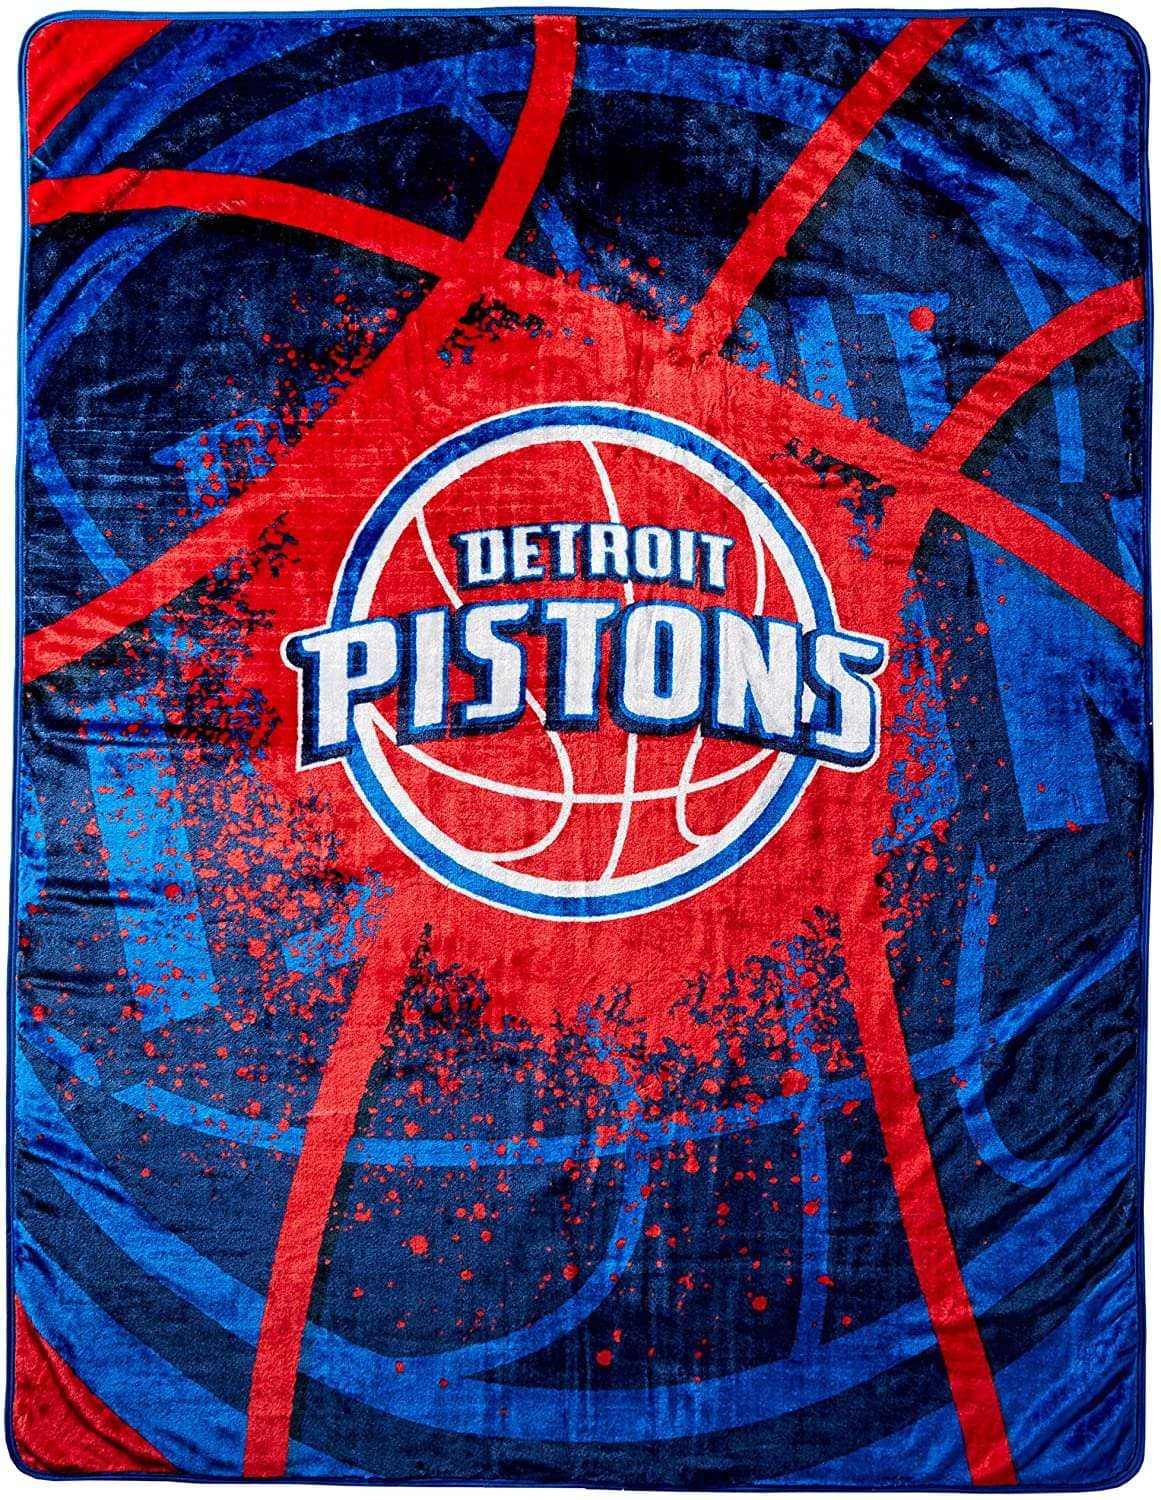 Officially Licensed Nba Throw Detroit Pistons Fleece Blanket